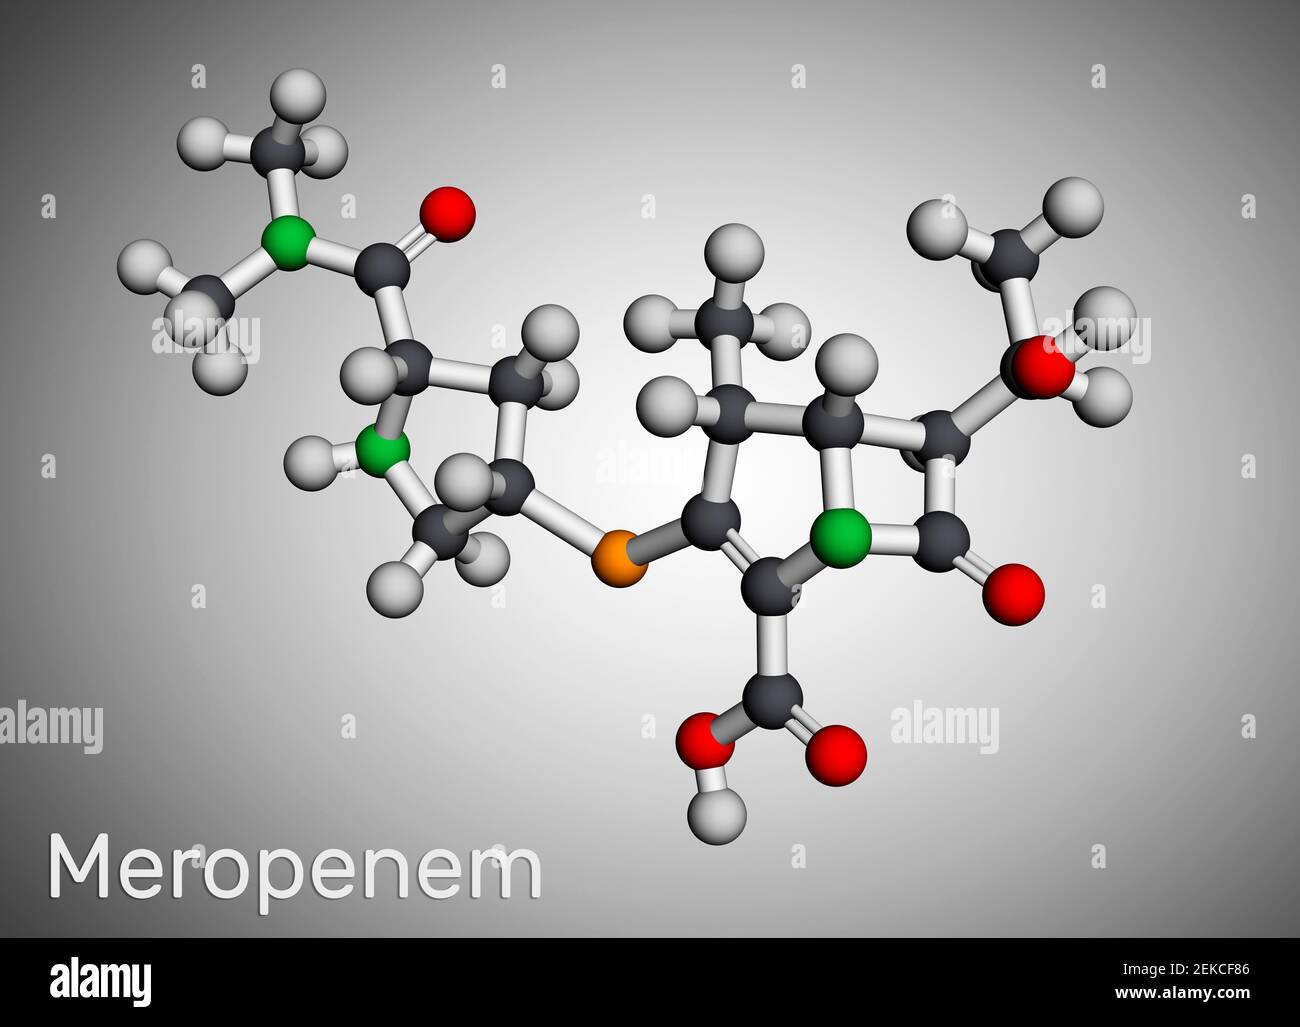 Molécule de meropenem. Il s'agit d'un antibiotique carbapénème à large spectre. Modèle moléculaire. Rendu 3D. Illustration 3D Banque D'Images